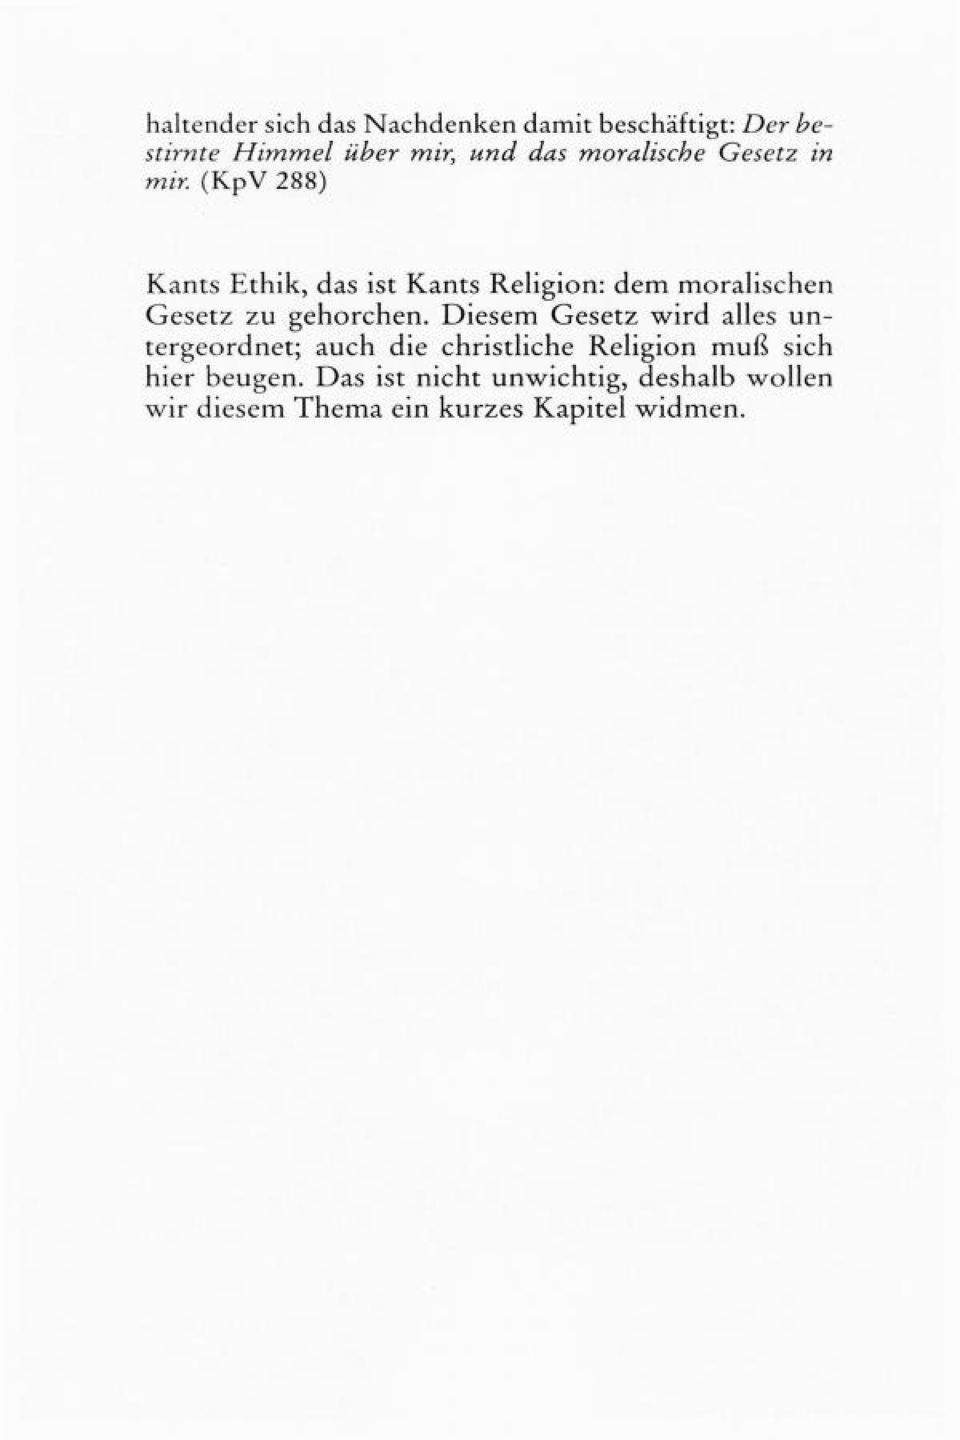 (KpV 288) Kants Ethik, das ist Kants Religion: dem moralischen Gesetz zu gehorchen.